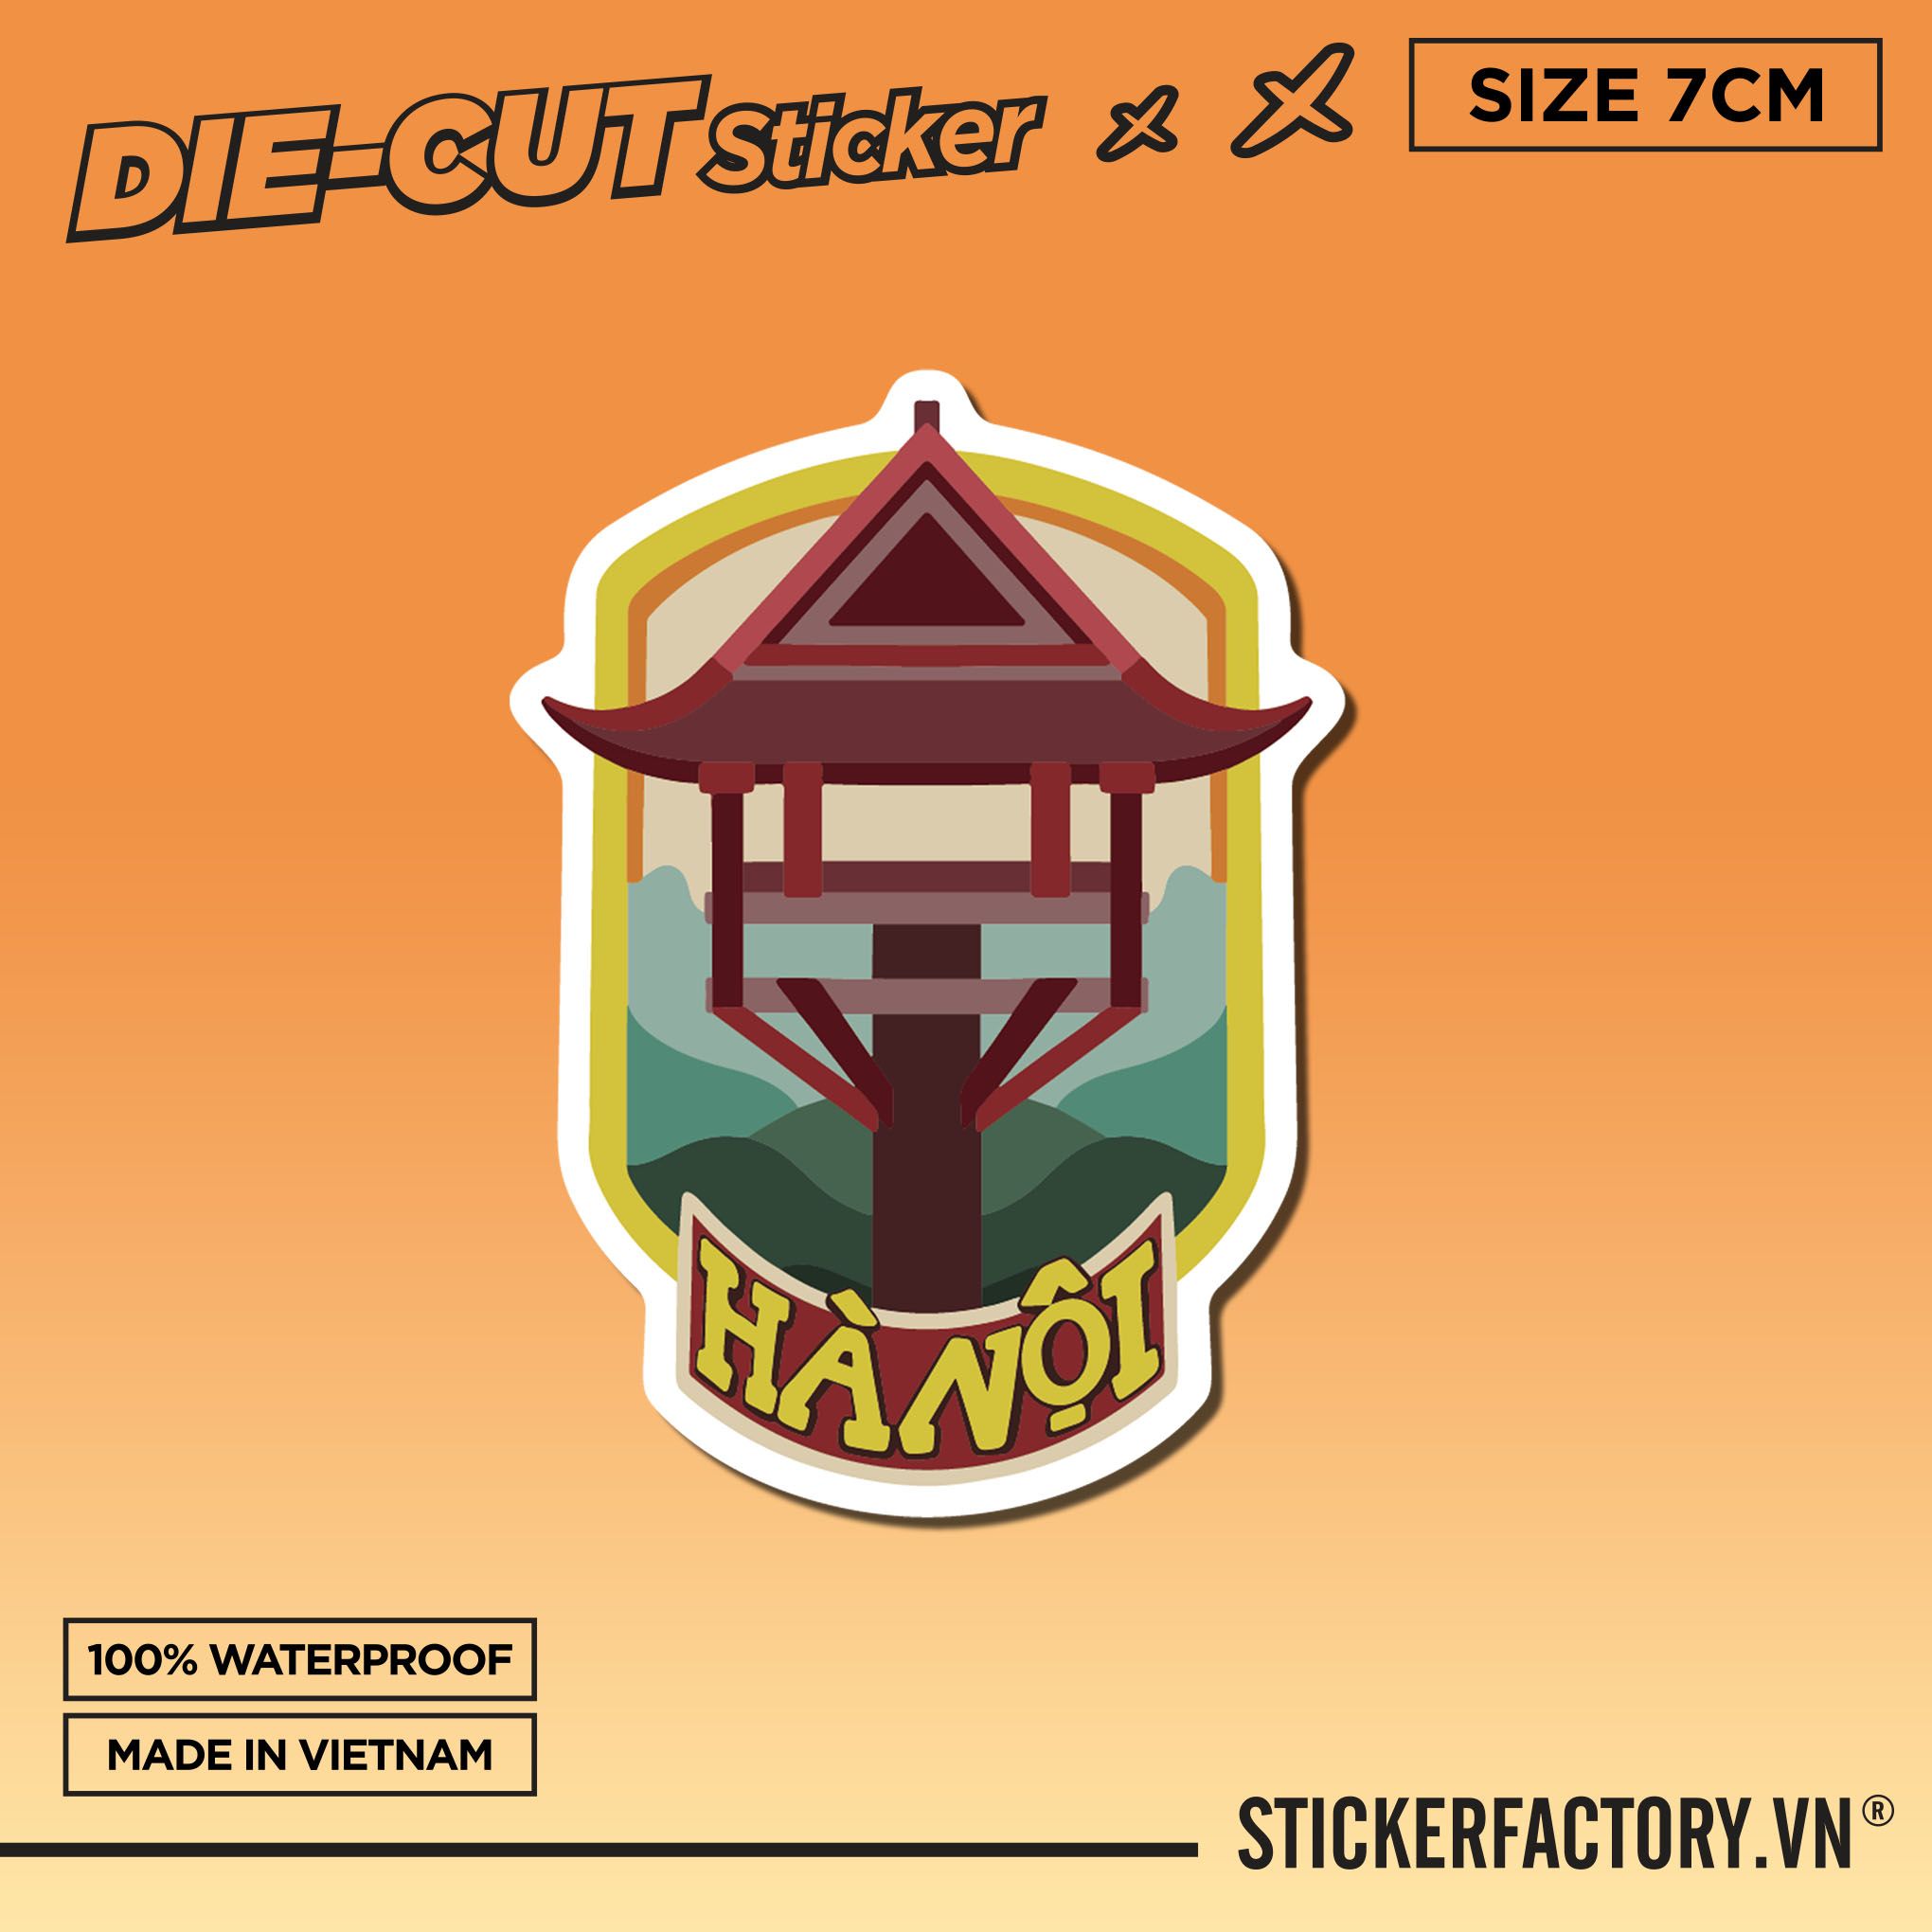 CHÙA MỘT CỘT- Sticker Die-cut hình dán cắt rời